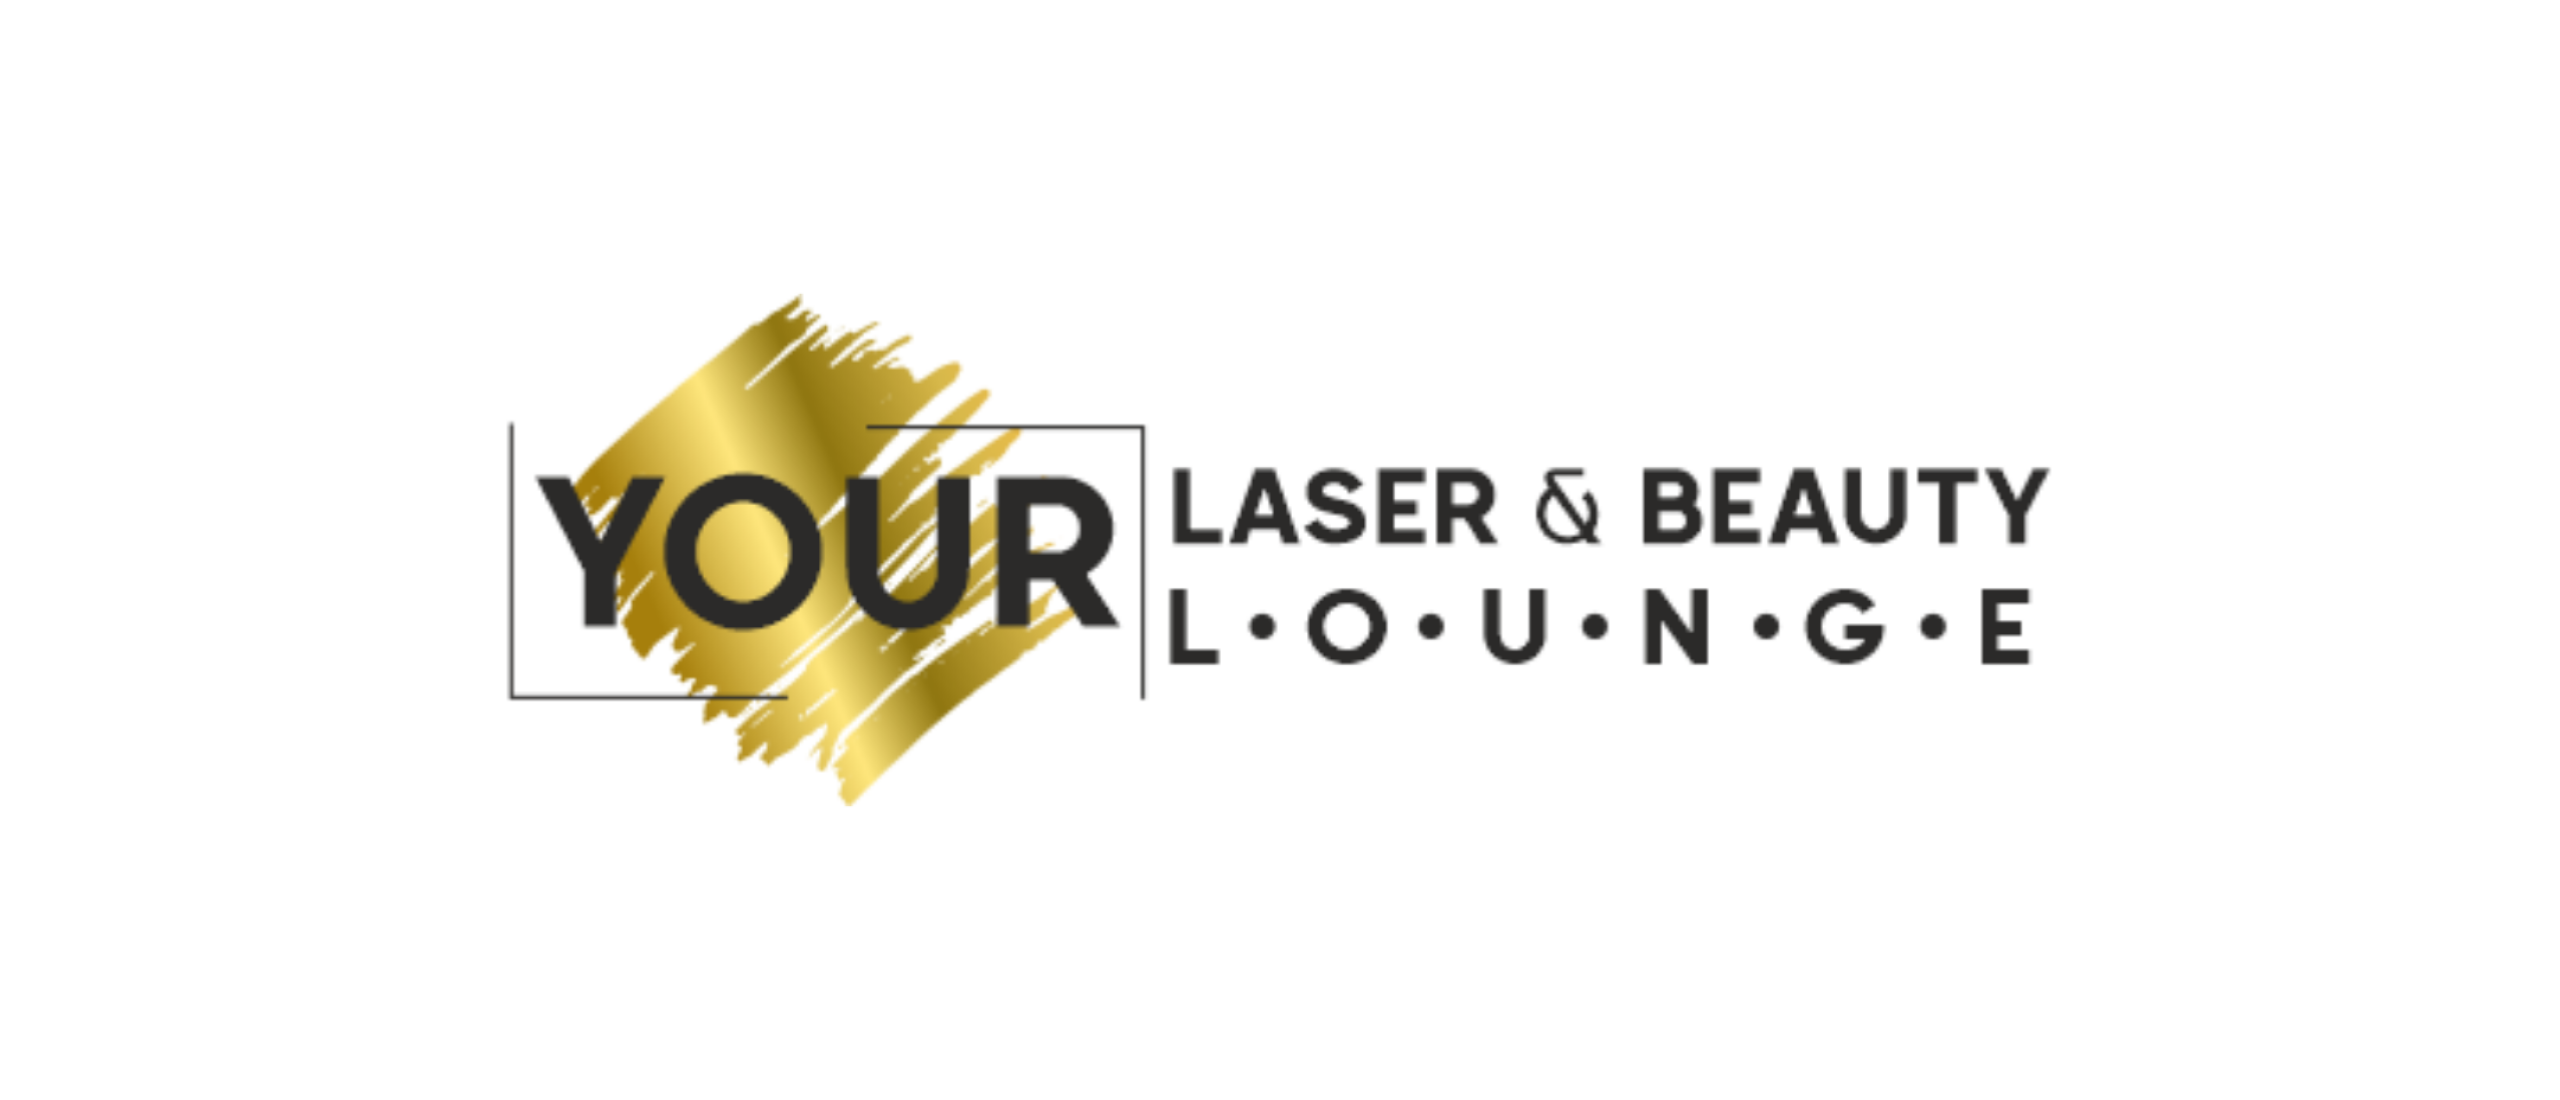 Your Laser & Beauty Lounge: De Convergentie van Esthetiek en Innovatie